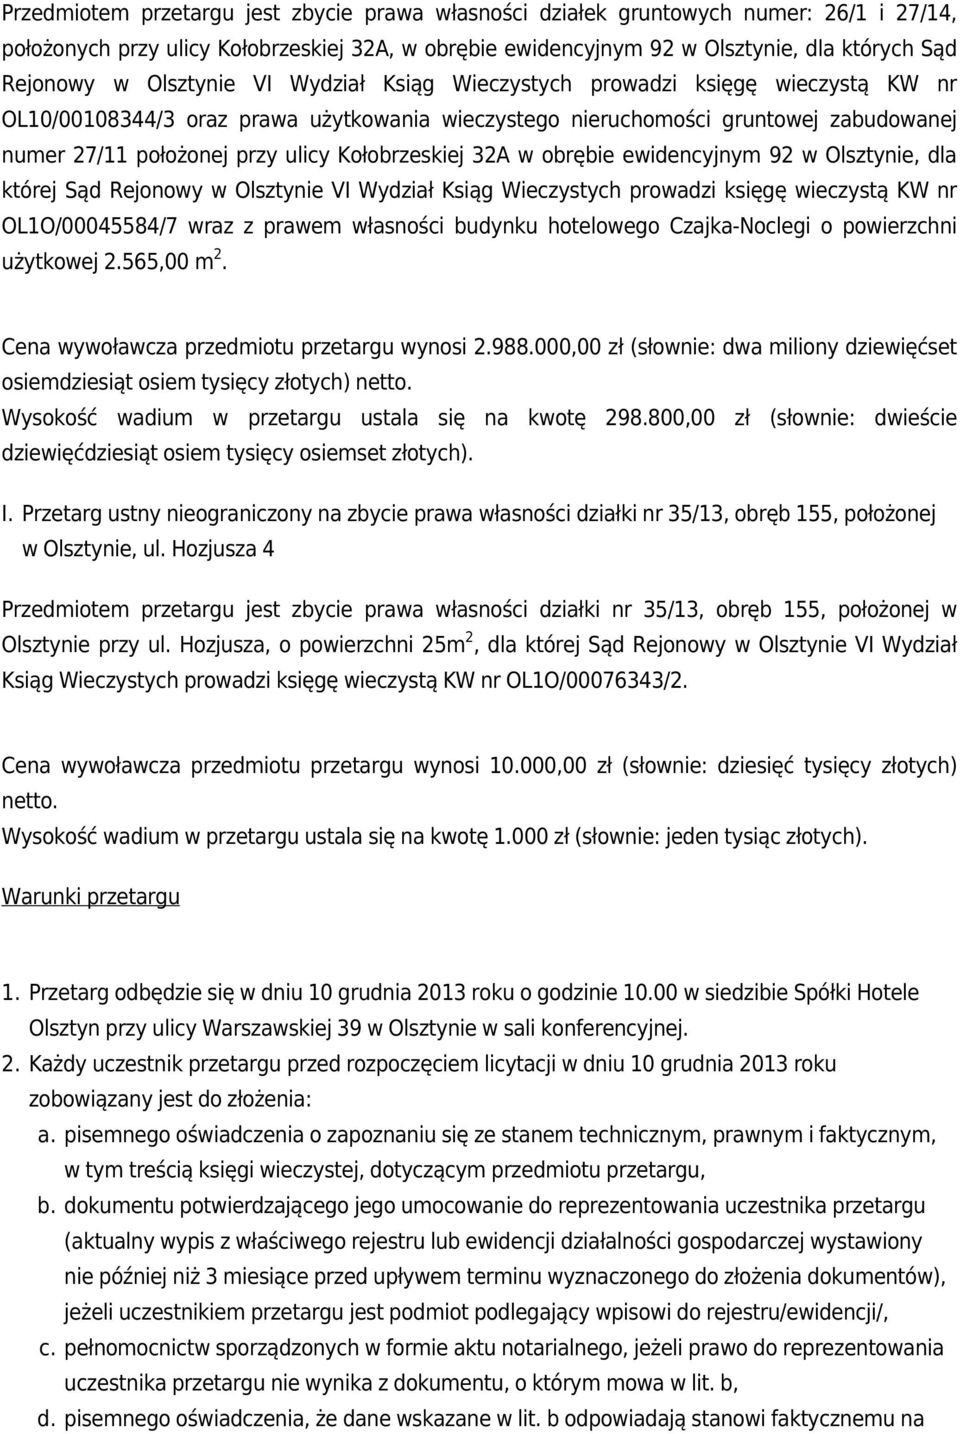 Kołobrzeskiej 32A w obrębie ewidencyjnym 92 w Olsztynie, dla której Sąd Rejonowy w Olsztynie VI Wydział Ksiąg Wieczystych prowadzi księgę wieczystą KW nr OL1O/00045584/7 wraz z prawem własności